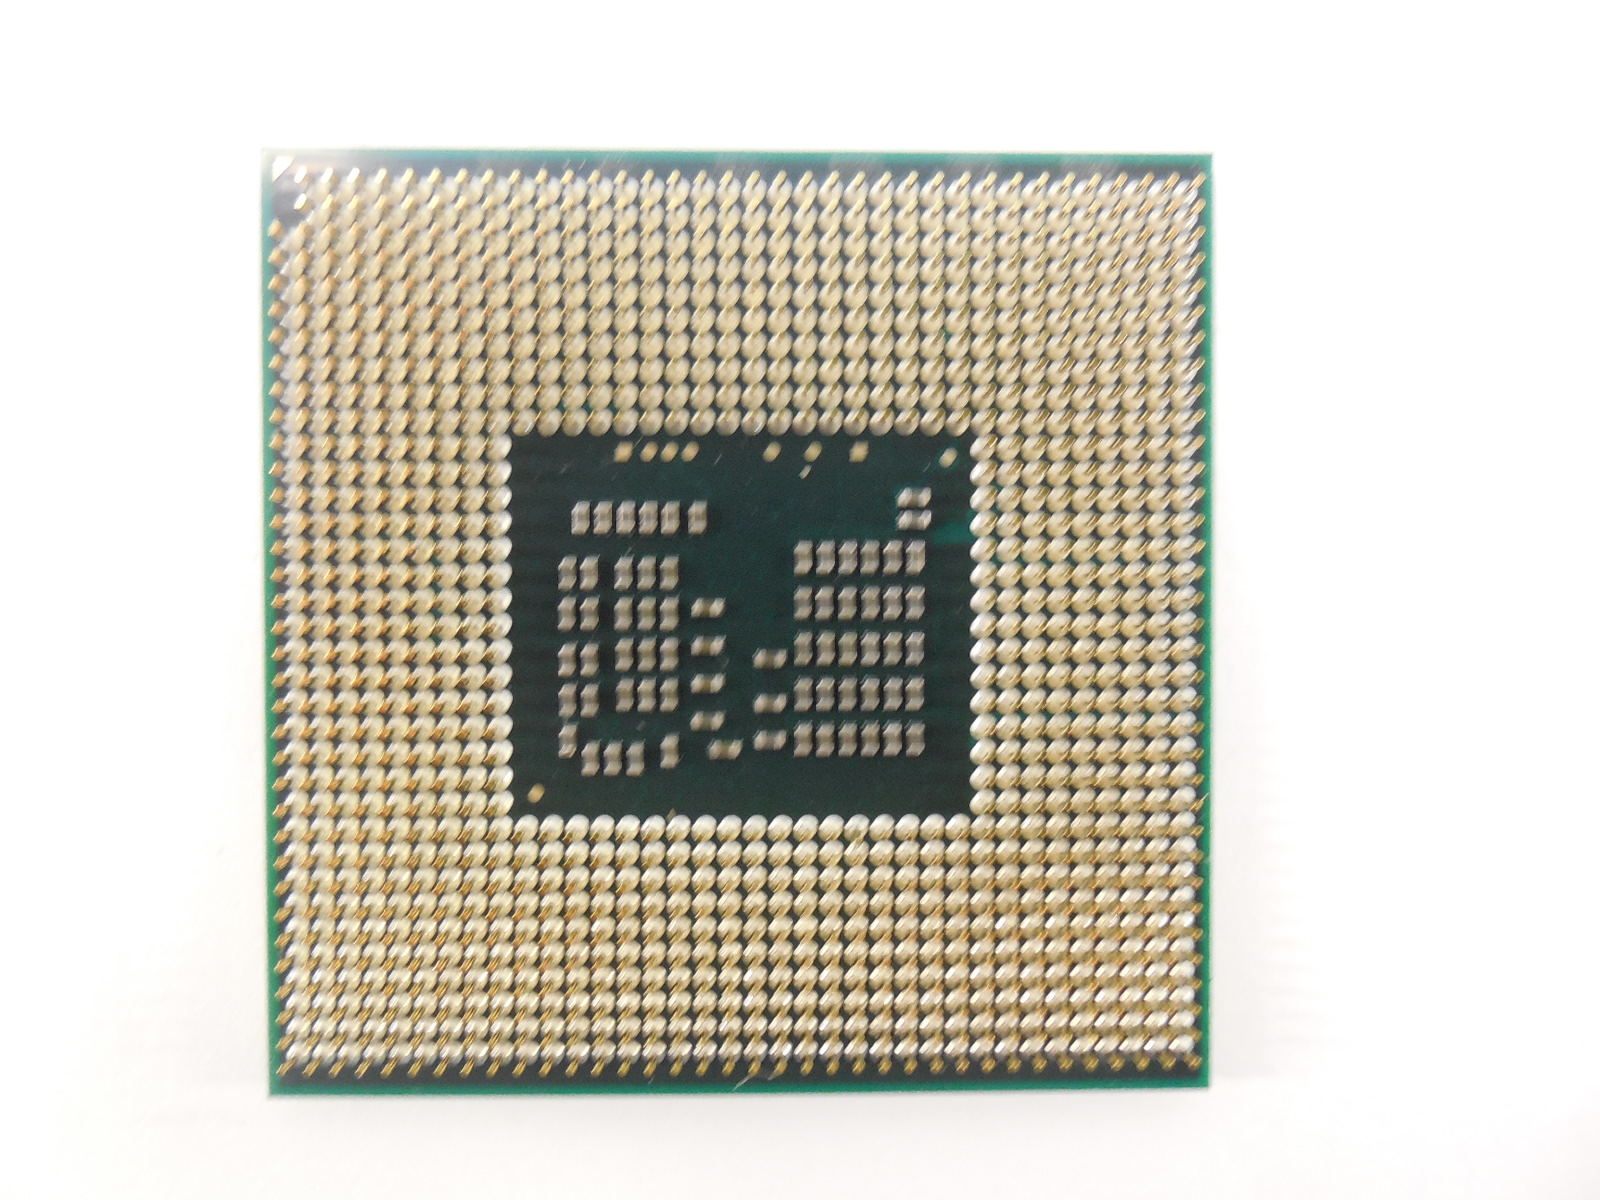 Сокет pga988. Core i5 520m. Intel Core i5-520m (pga988). Bga1288 pga988. Intel Core i5 520m сокет.